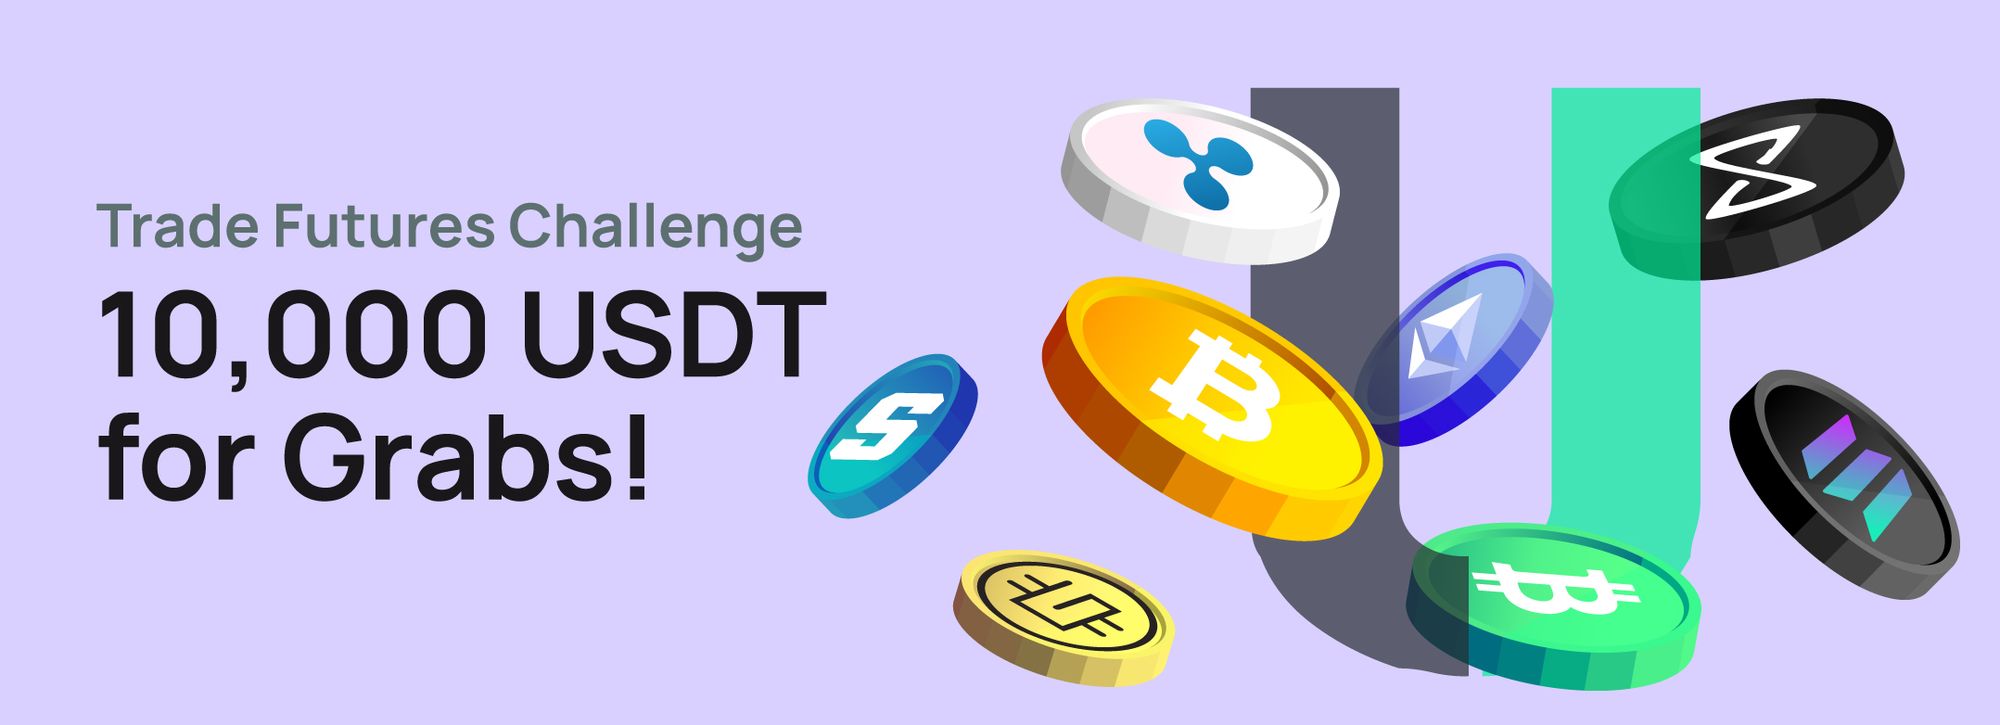 USDT Trade Futures Challenge: 10,000 USDT for Grabs!